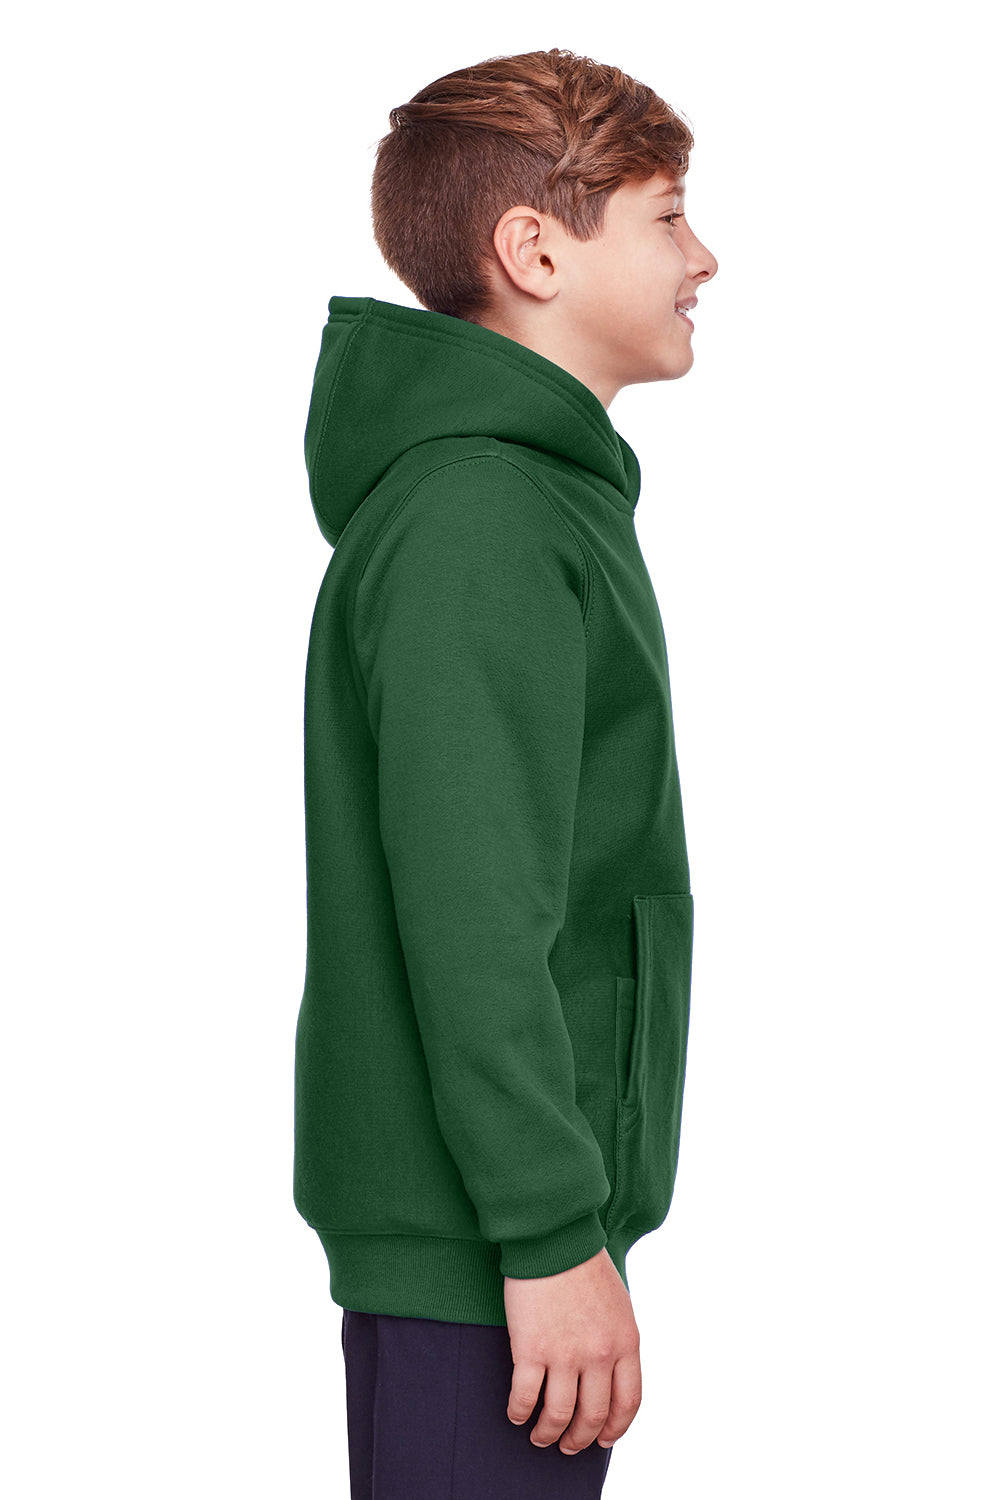 Team 365 TT96Y Youth Zone HydroSport Fleece Water Resistant Hooded Sweatshirt Hoodie Dark Green Side